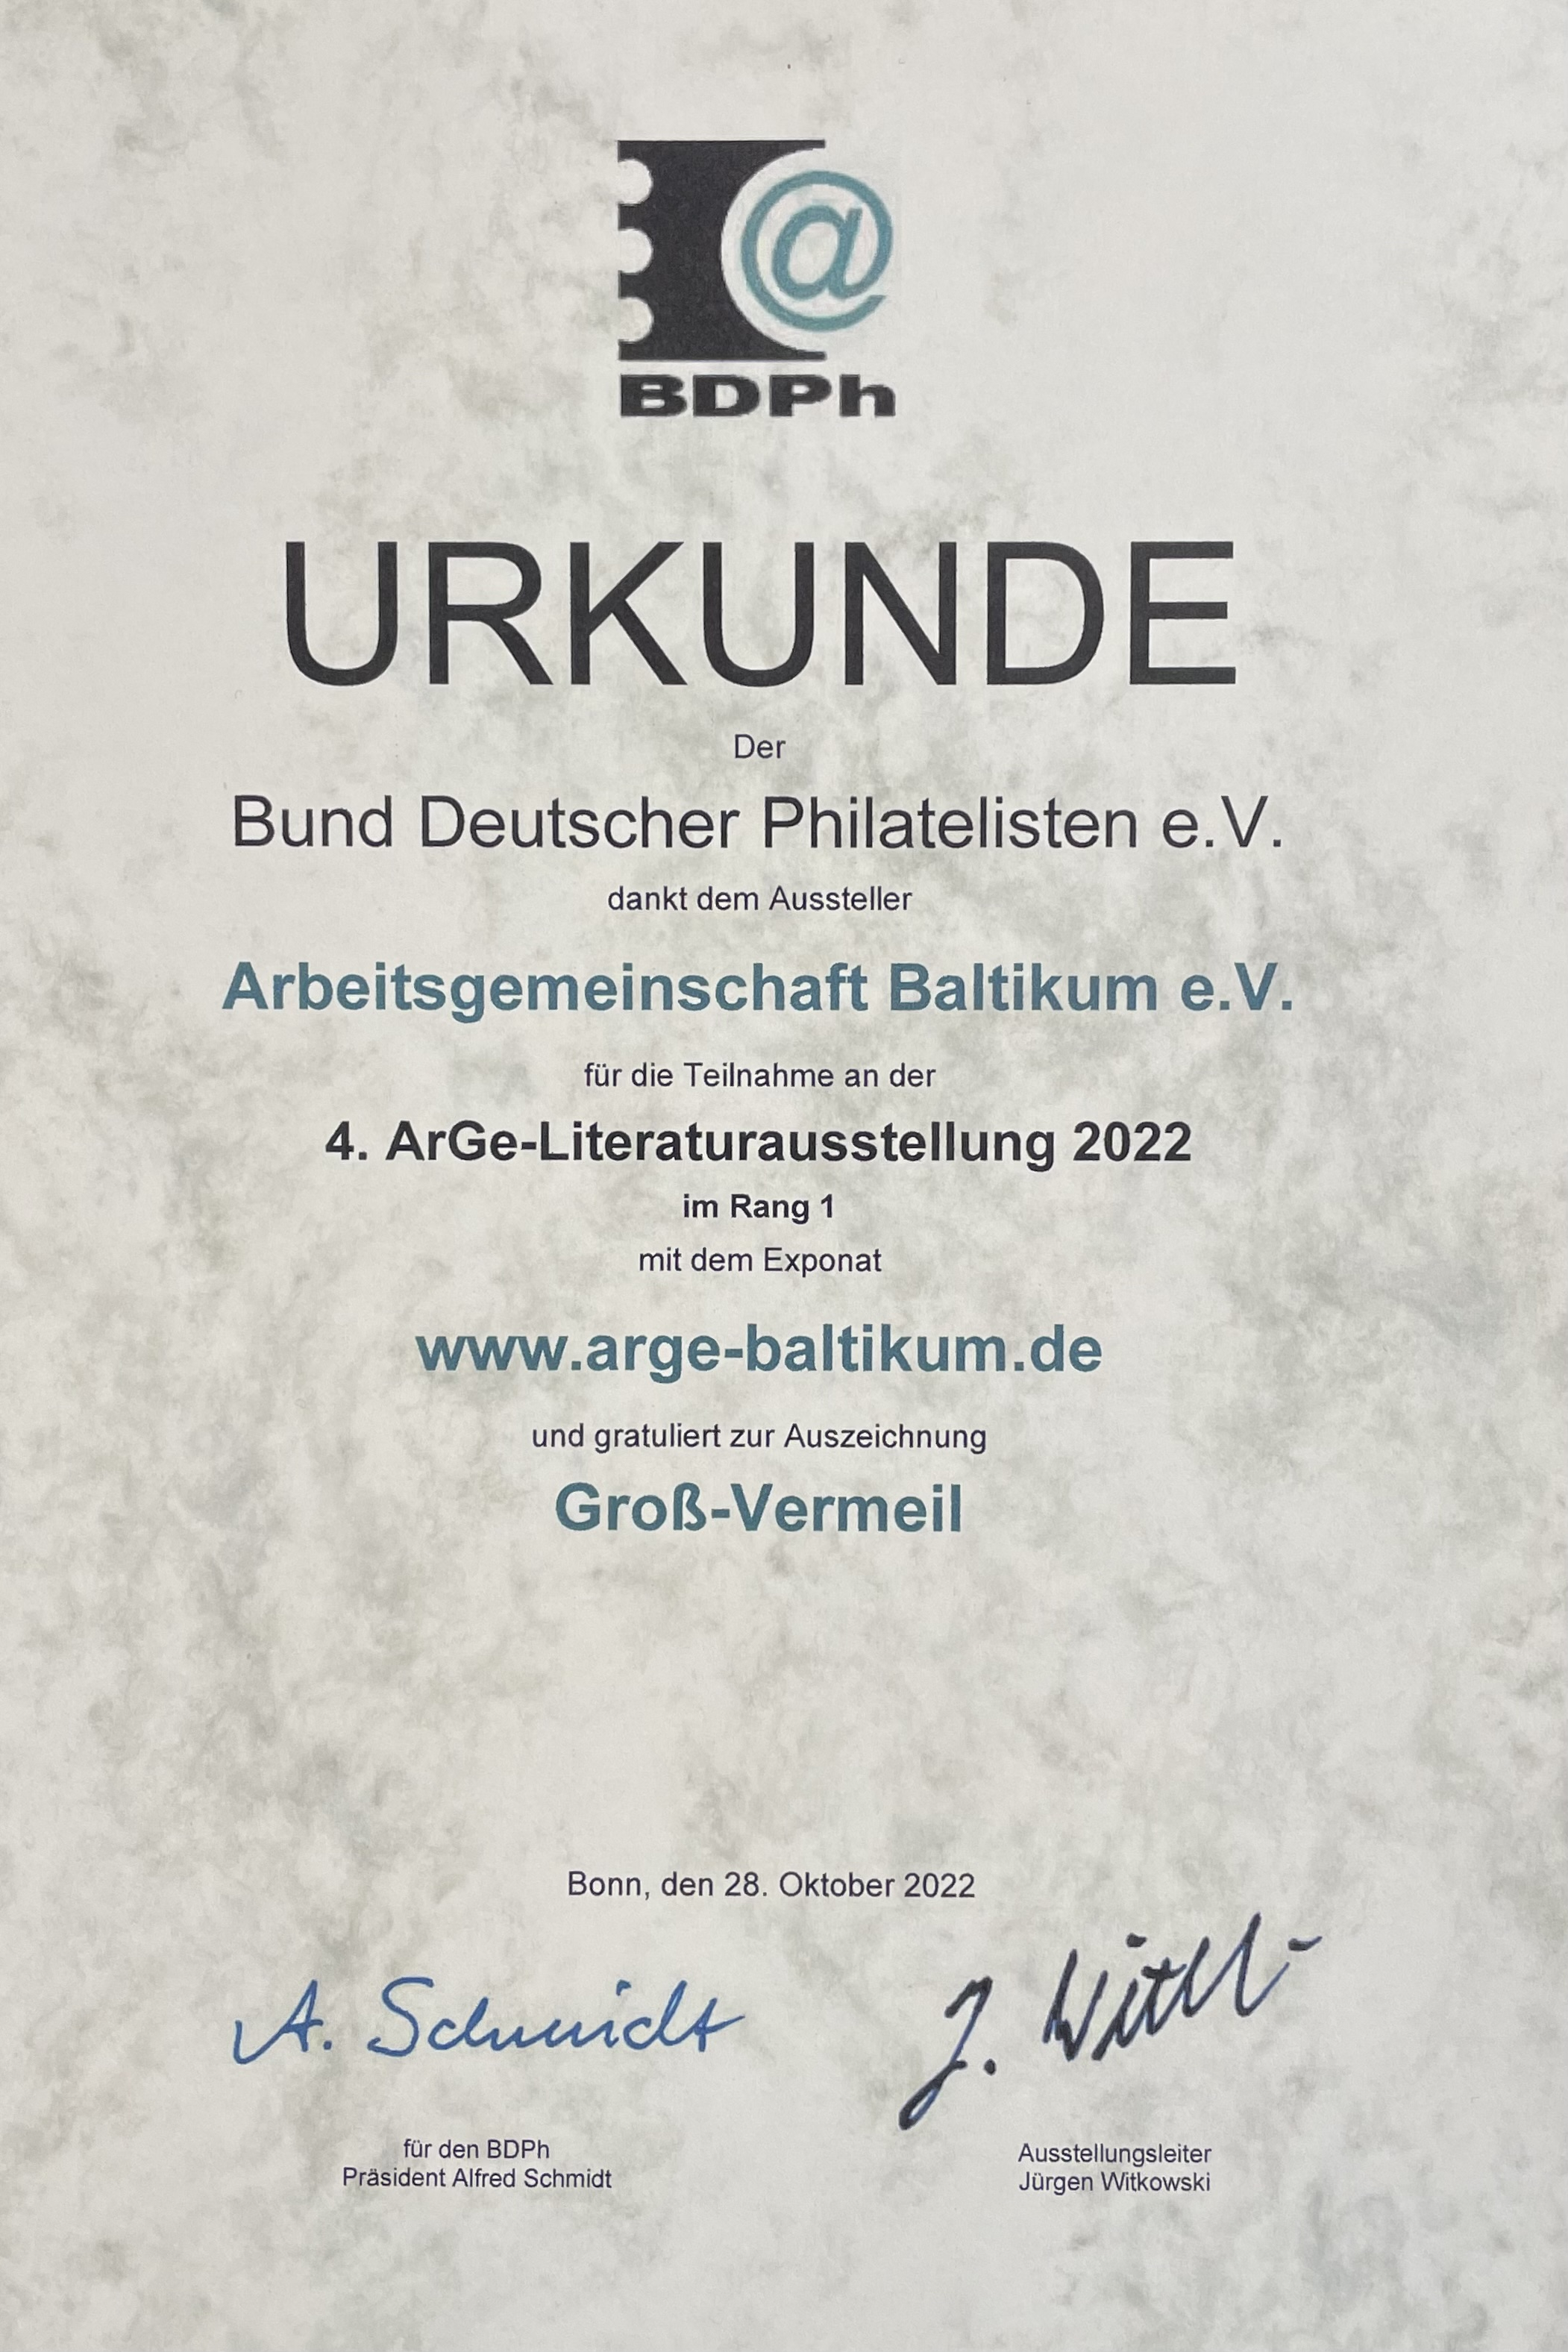 4th ArGe literature exhibition of the BDPh 2022: Grand-Vermeil (83 p.) for the web arge-baltikum.de